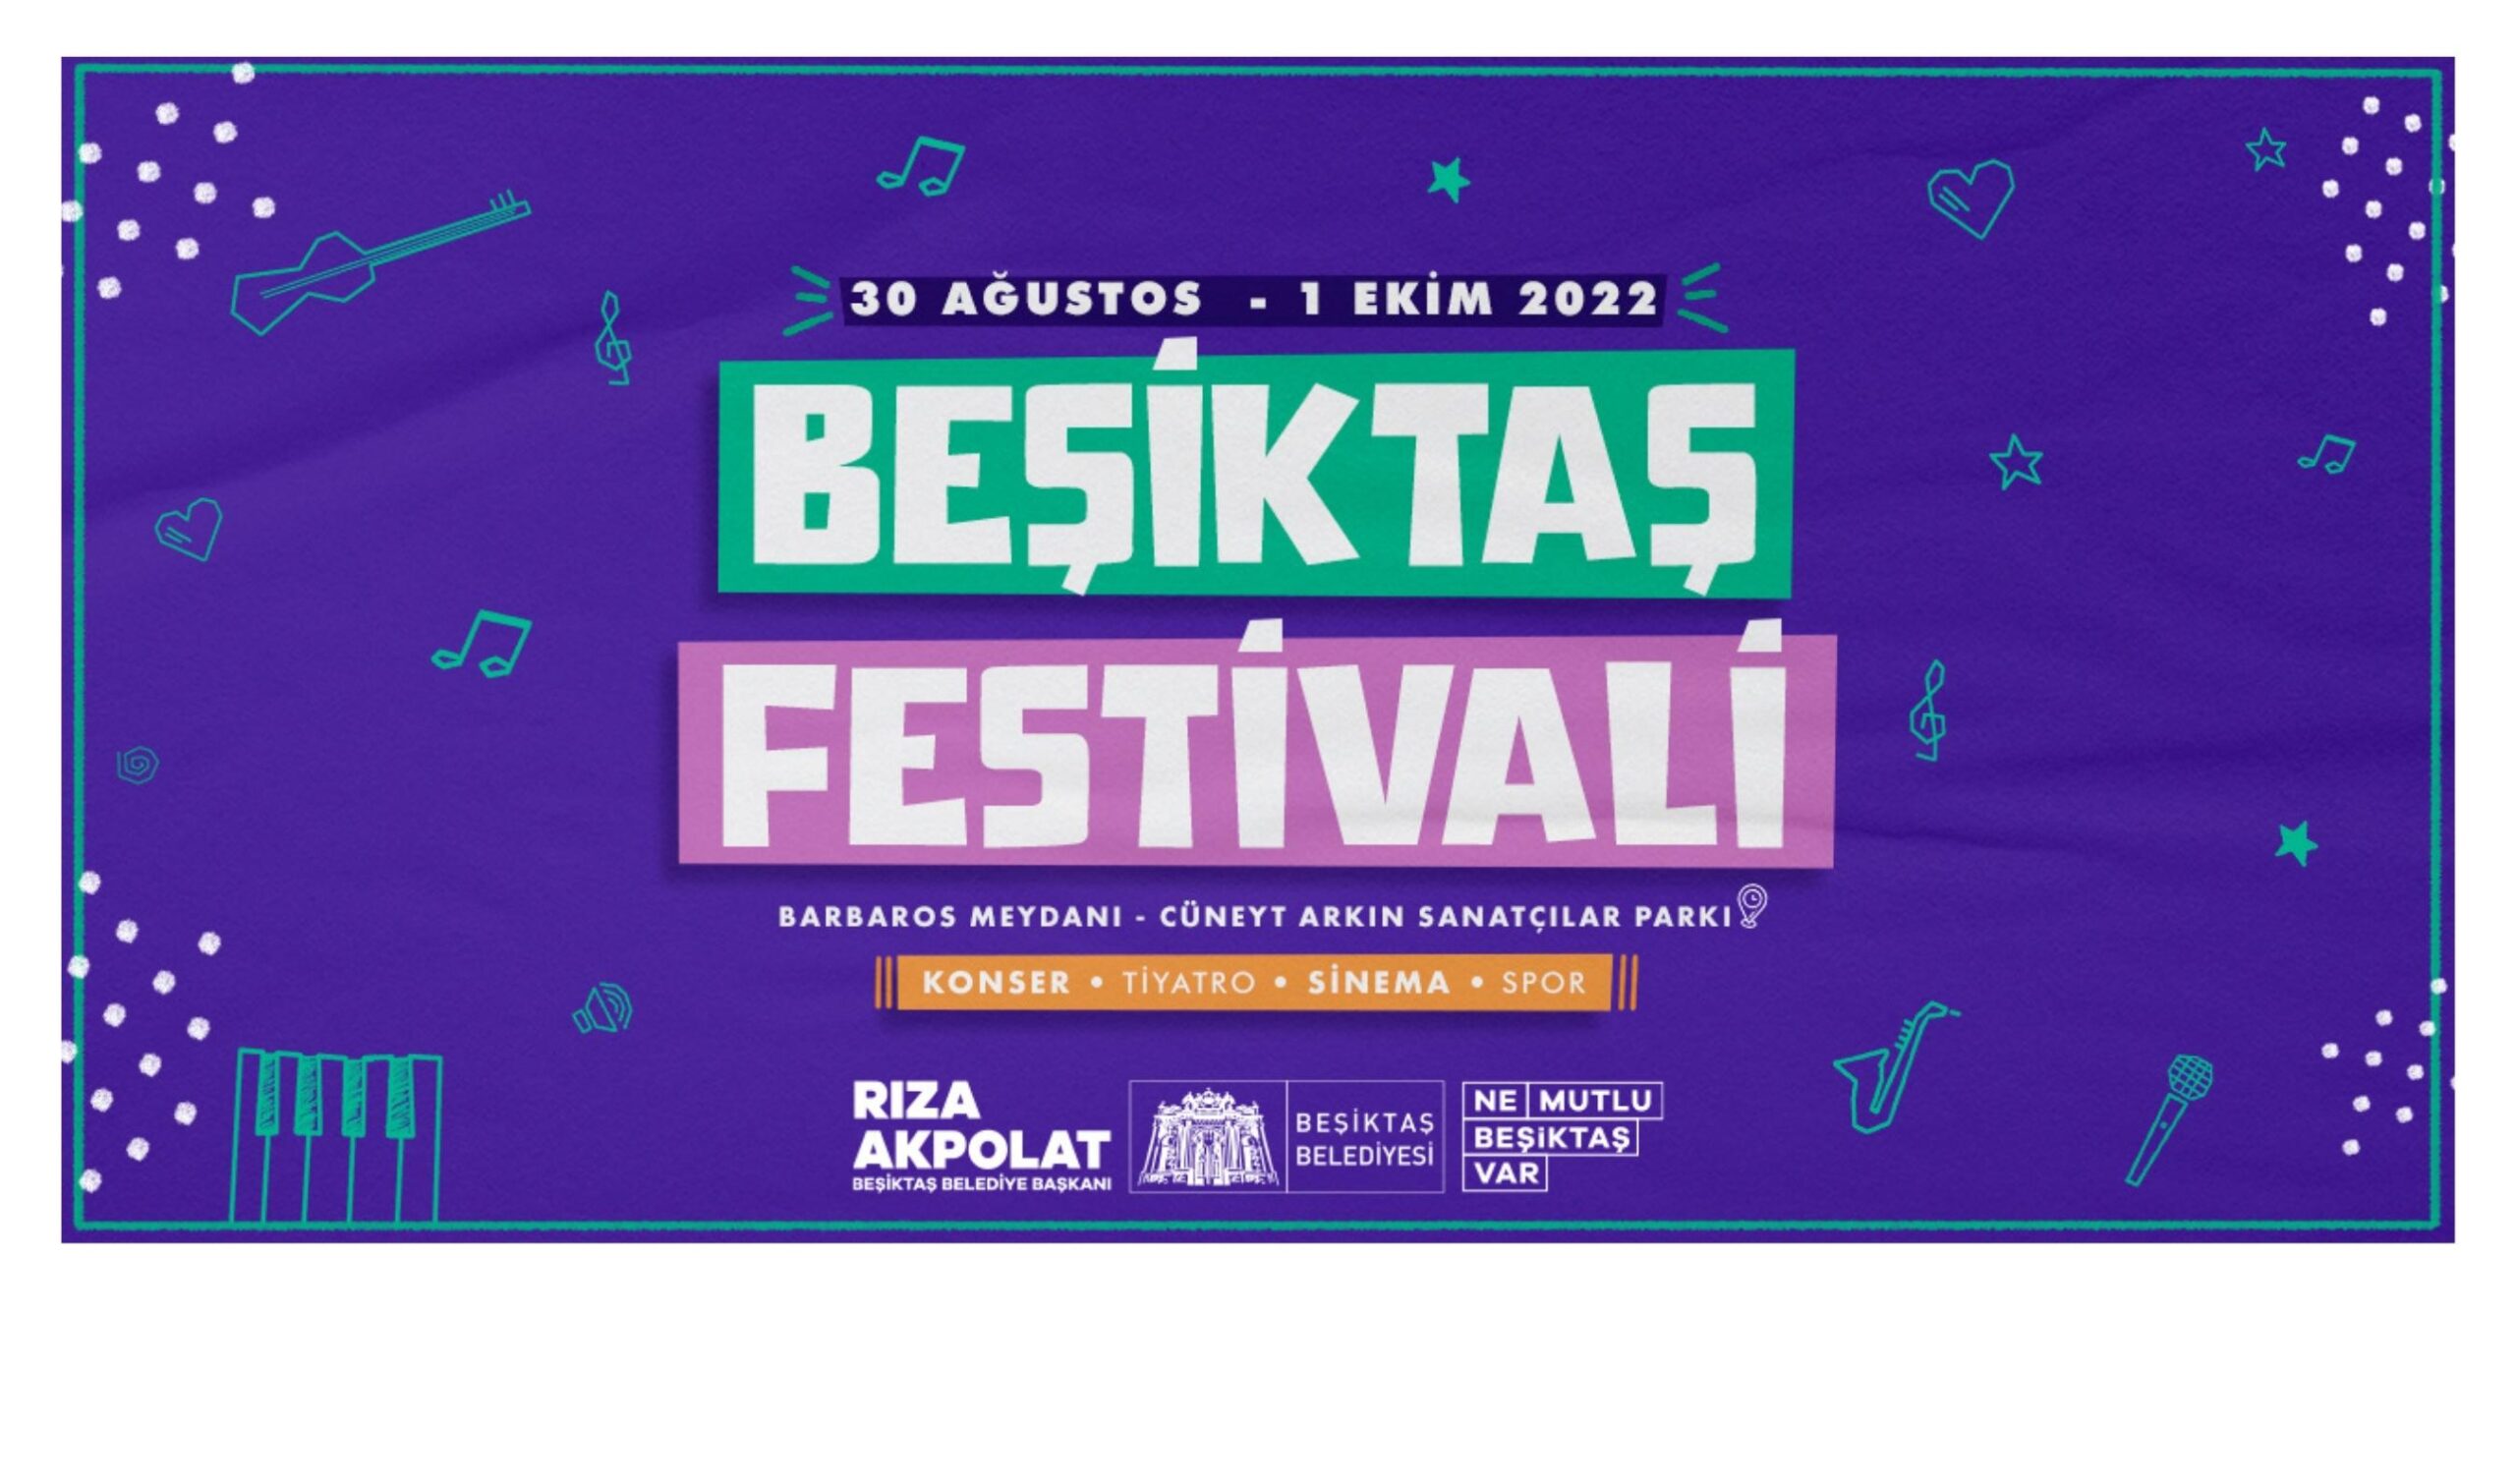 Beşiktaş Festivali 30 Ağustos’ta başlıyor!